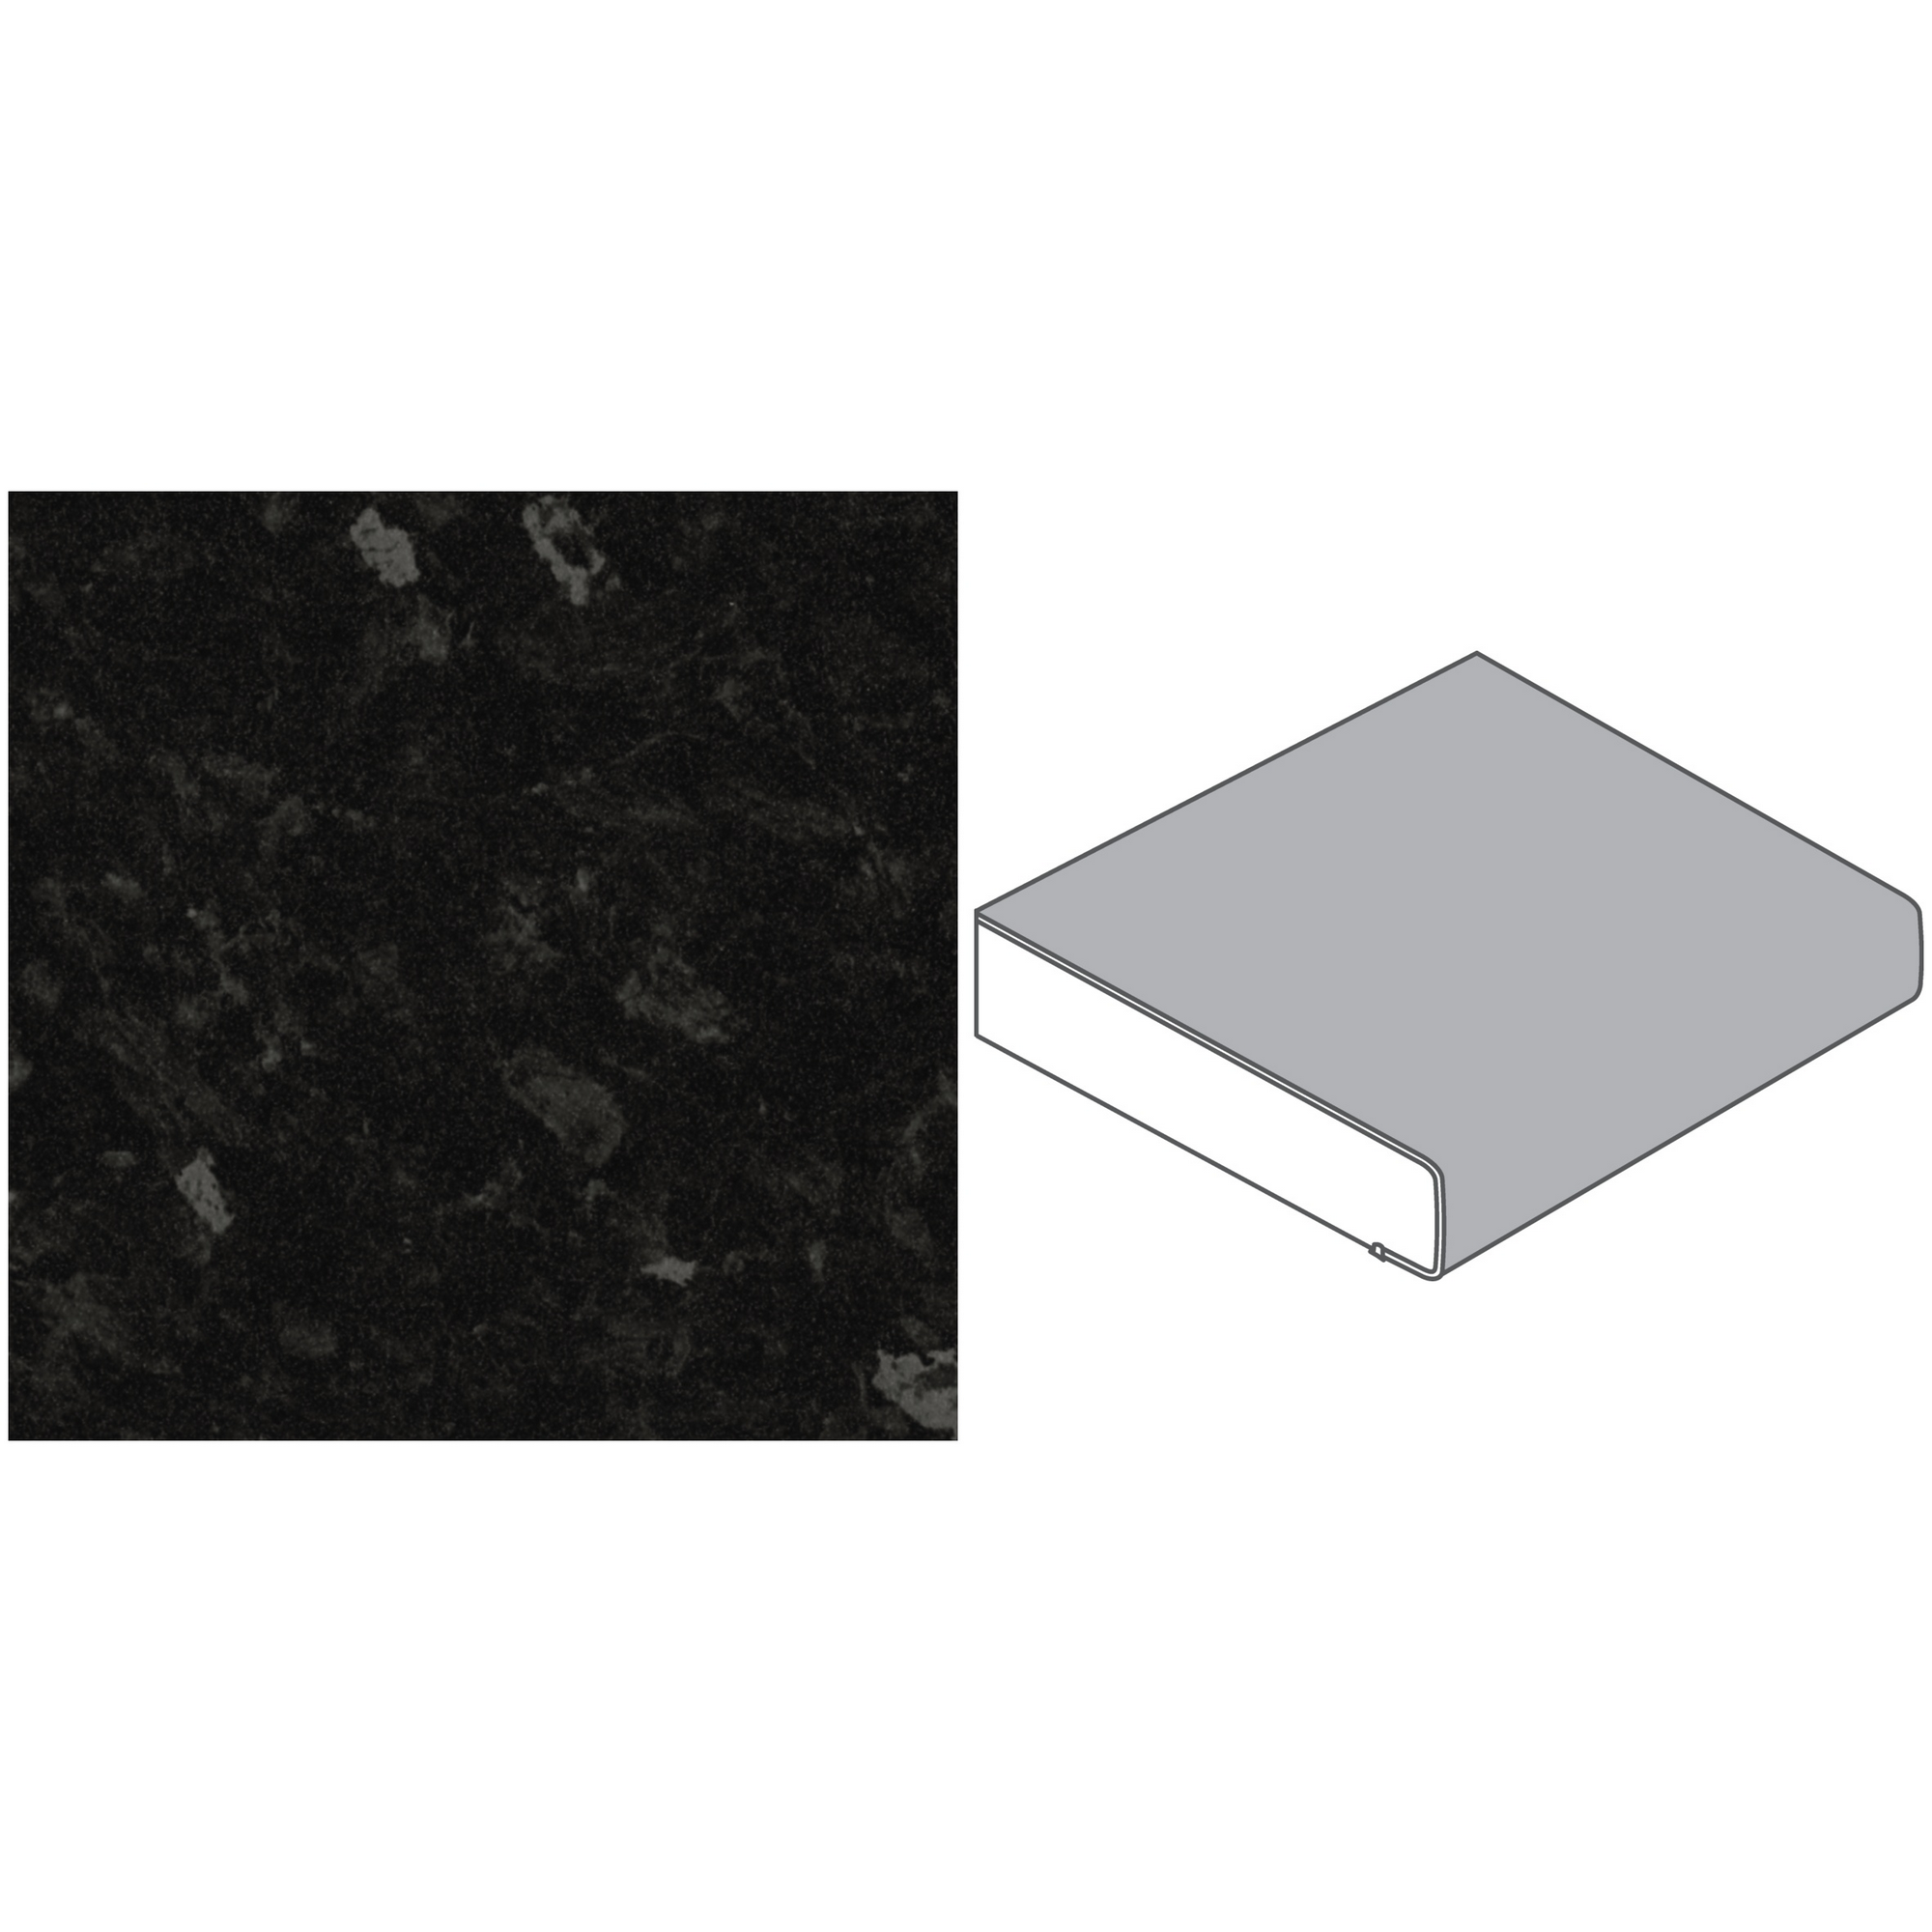 Küchenarbeitsplatte Spanplatte Basalt poliert 305 x 60 x 3,9 cm + product picture